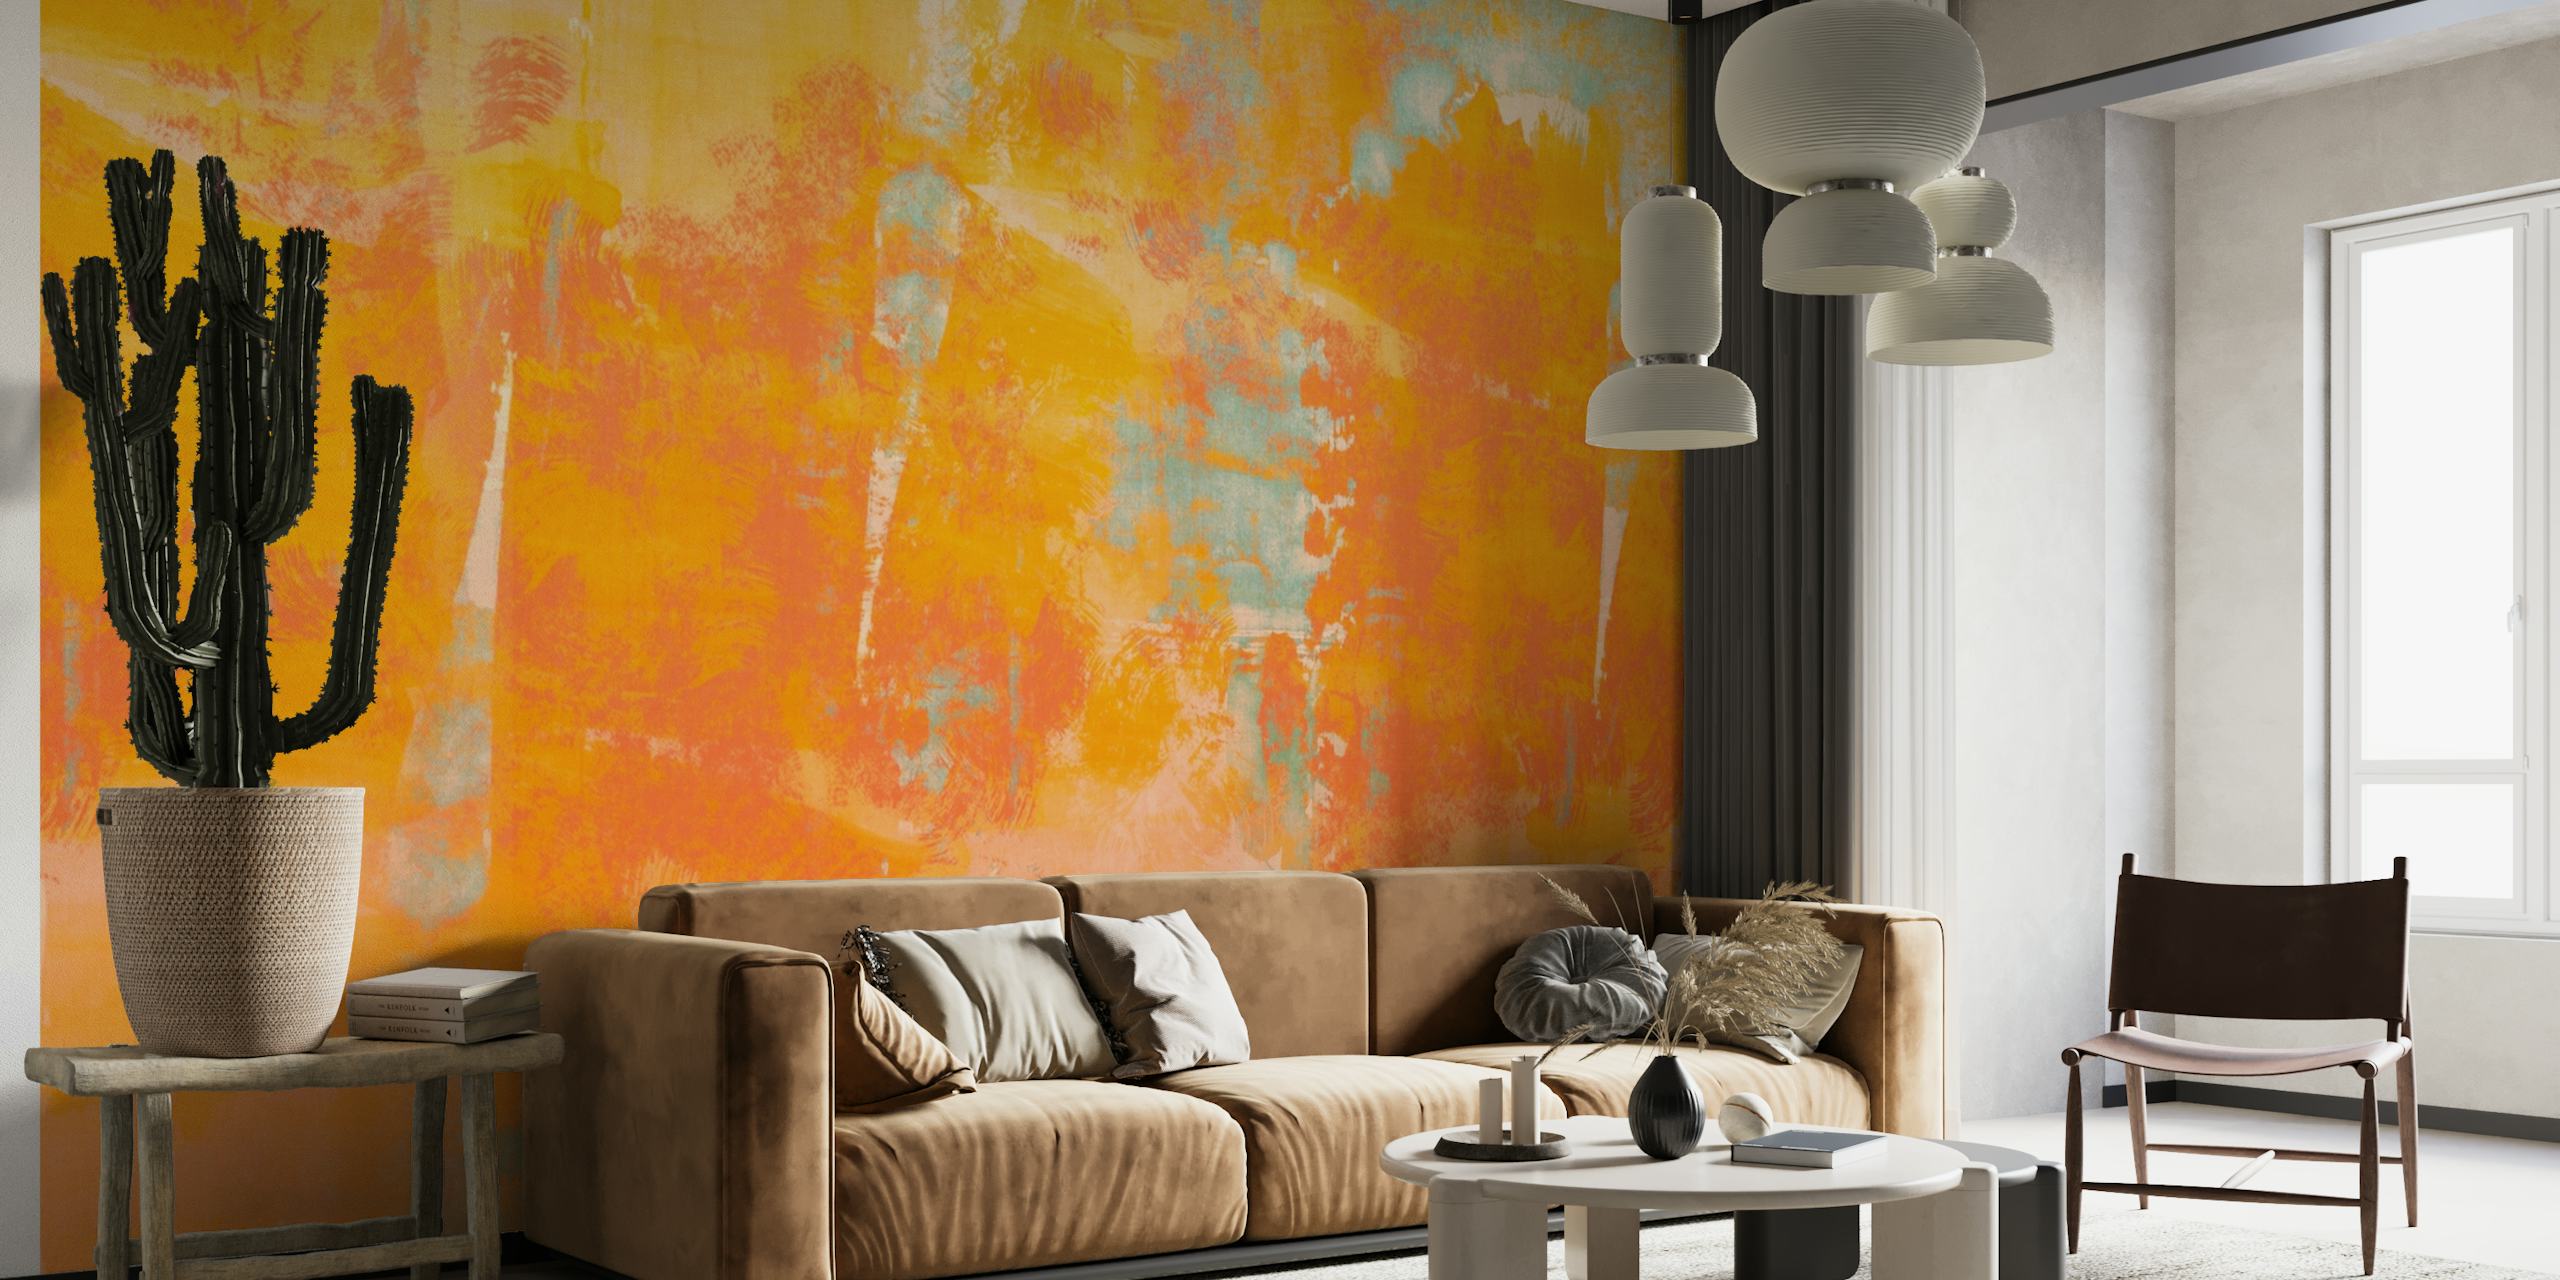 Abstracte aquarelmuurschildering in koraal- en oranje tinten met een voelbare grungetextuur